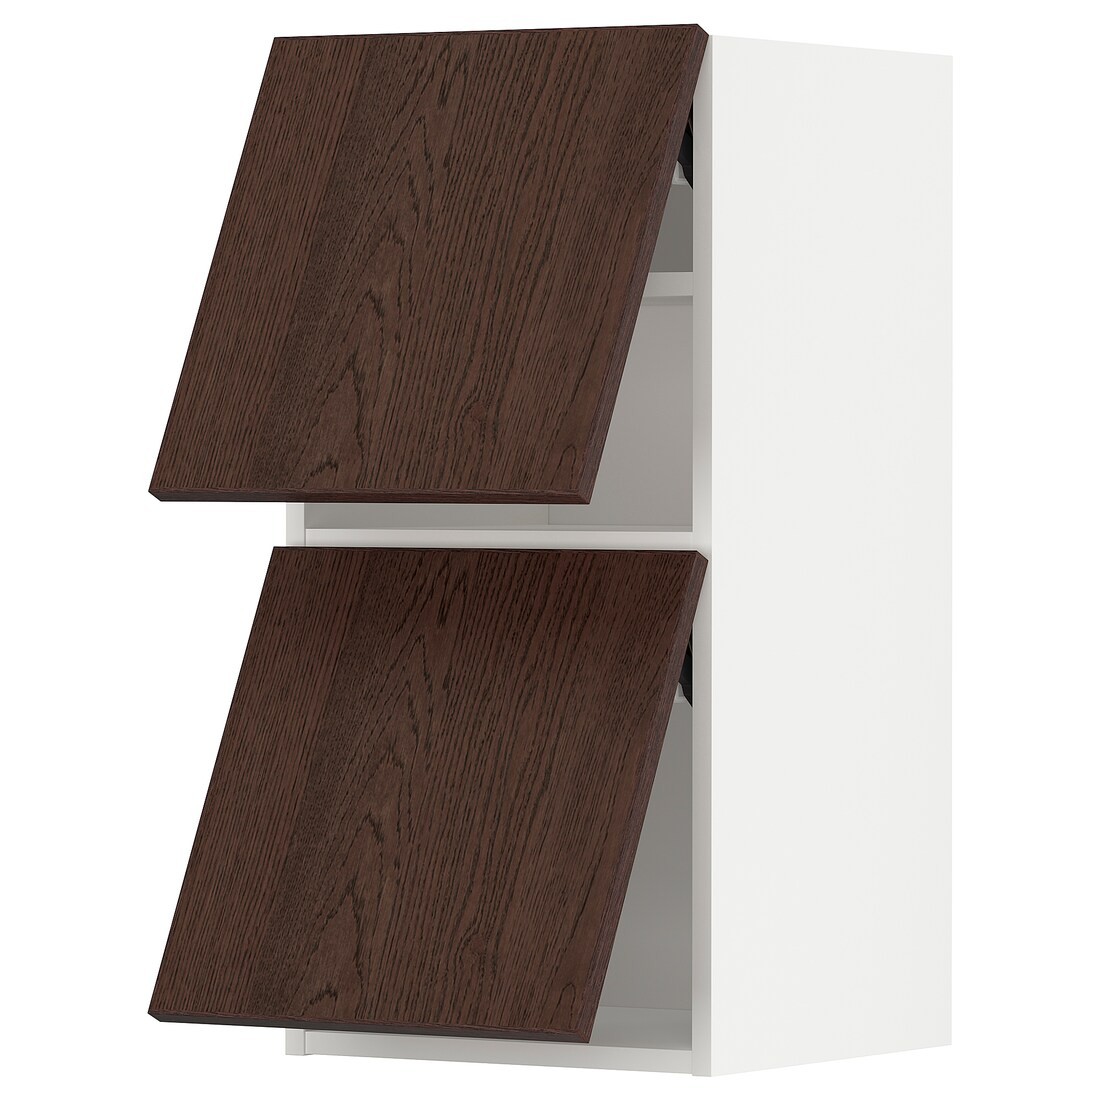 METOD МЕТОД Навесной горизонтальный шкаф / 2 двери, белый / Sinarp коричневый, 40x80 см